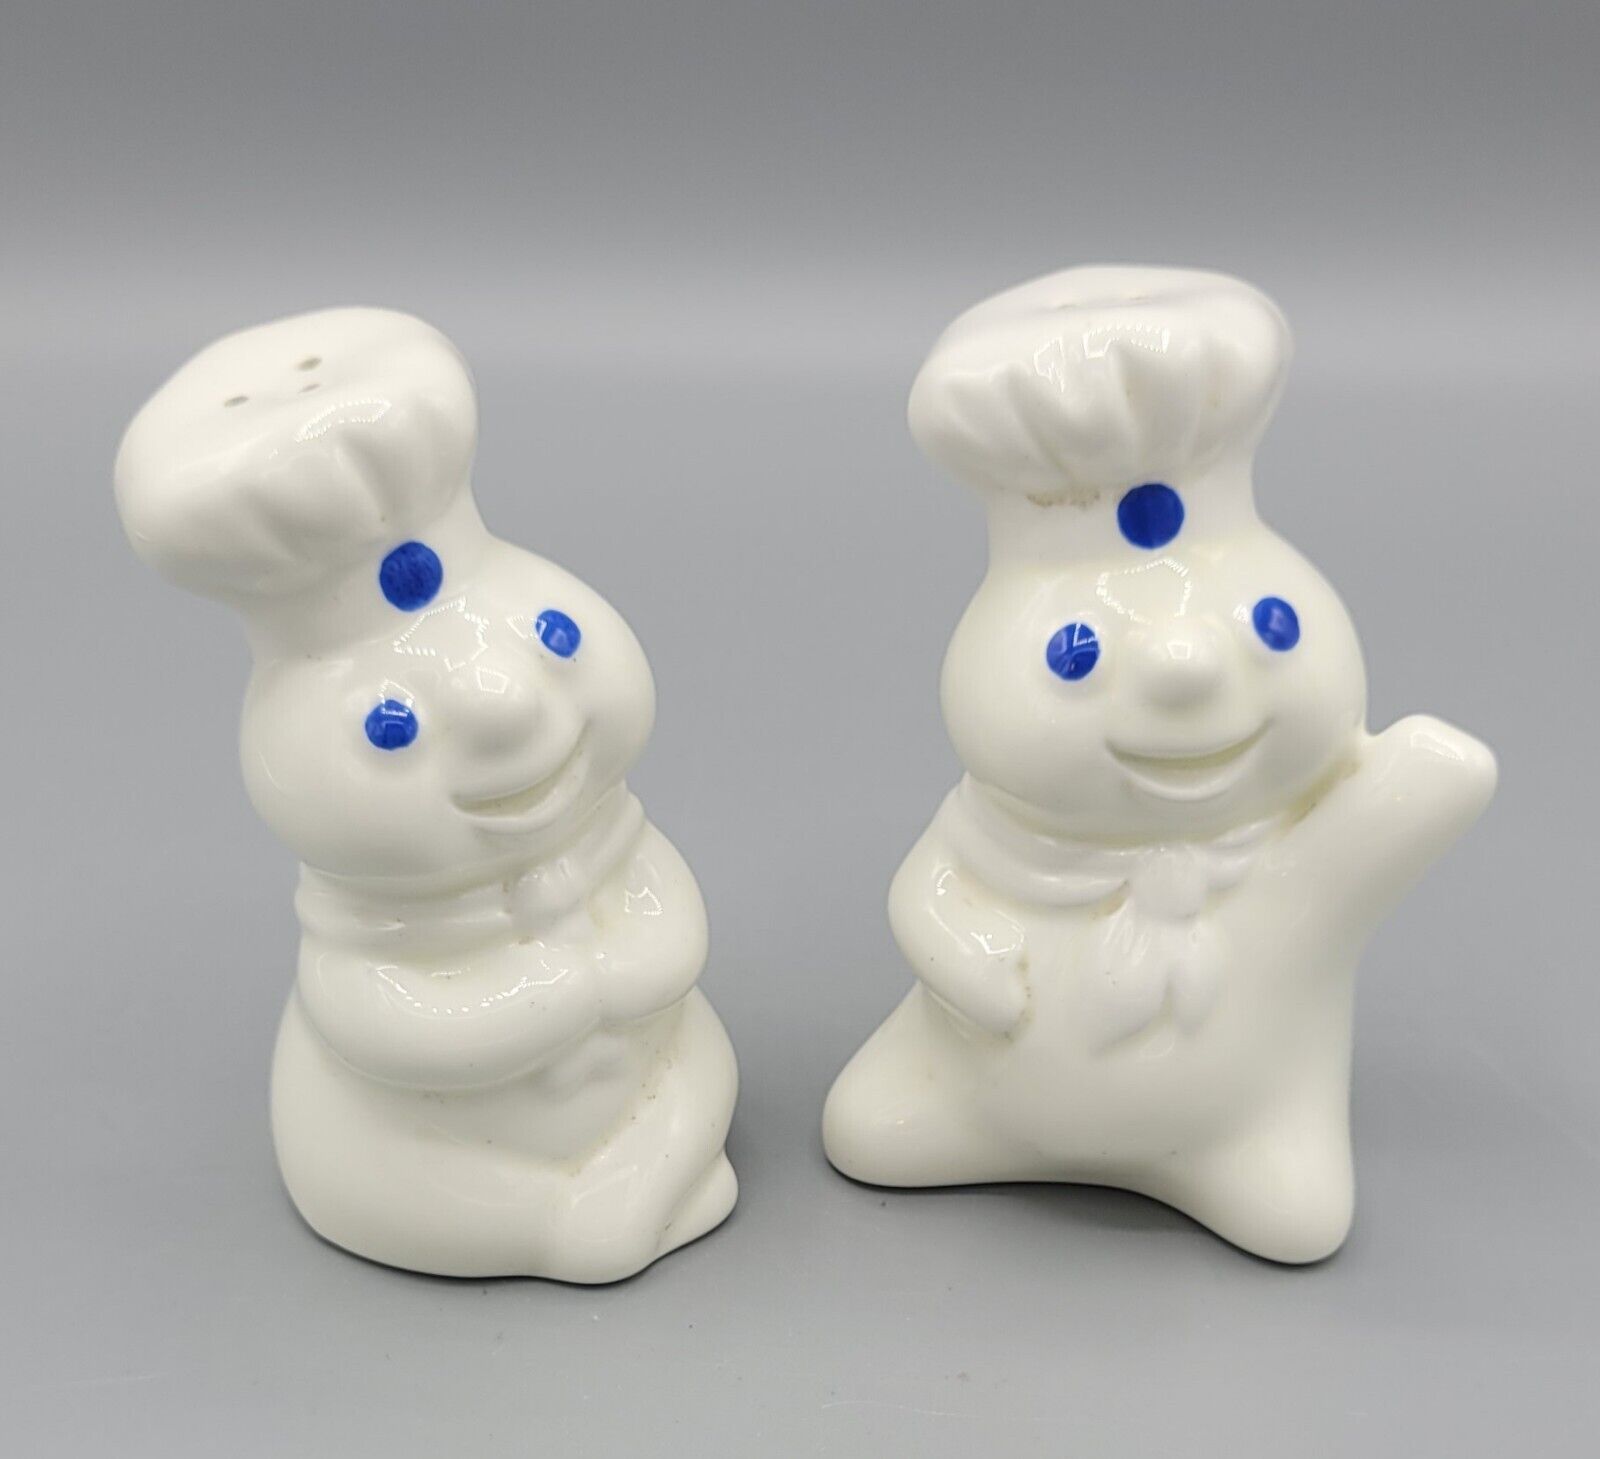 Vintage Porcelain Ceramic White Pillsbury Doughboy Salt & Pepper Shaker 1997